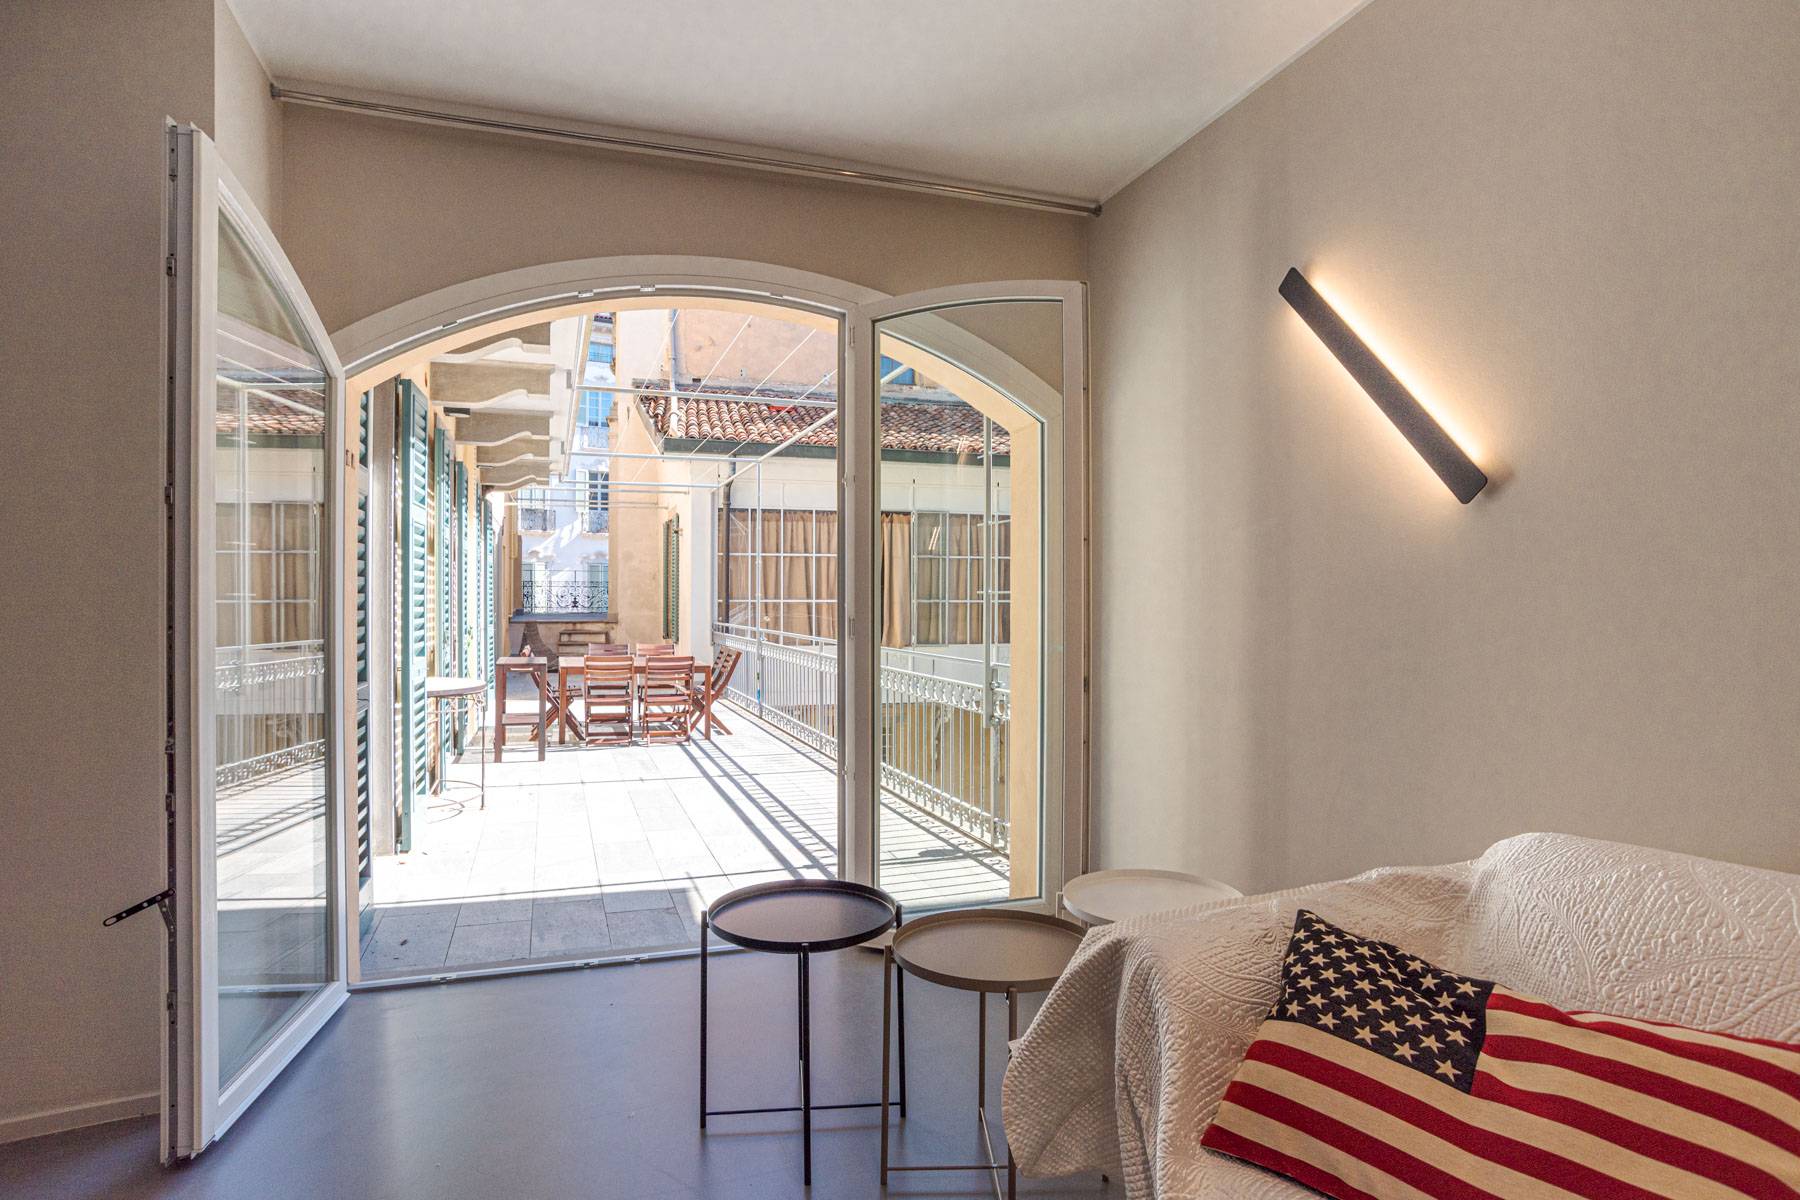 Appartamento in Vendita a Bergamo: 5 locali, 370 mq - Foto 3